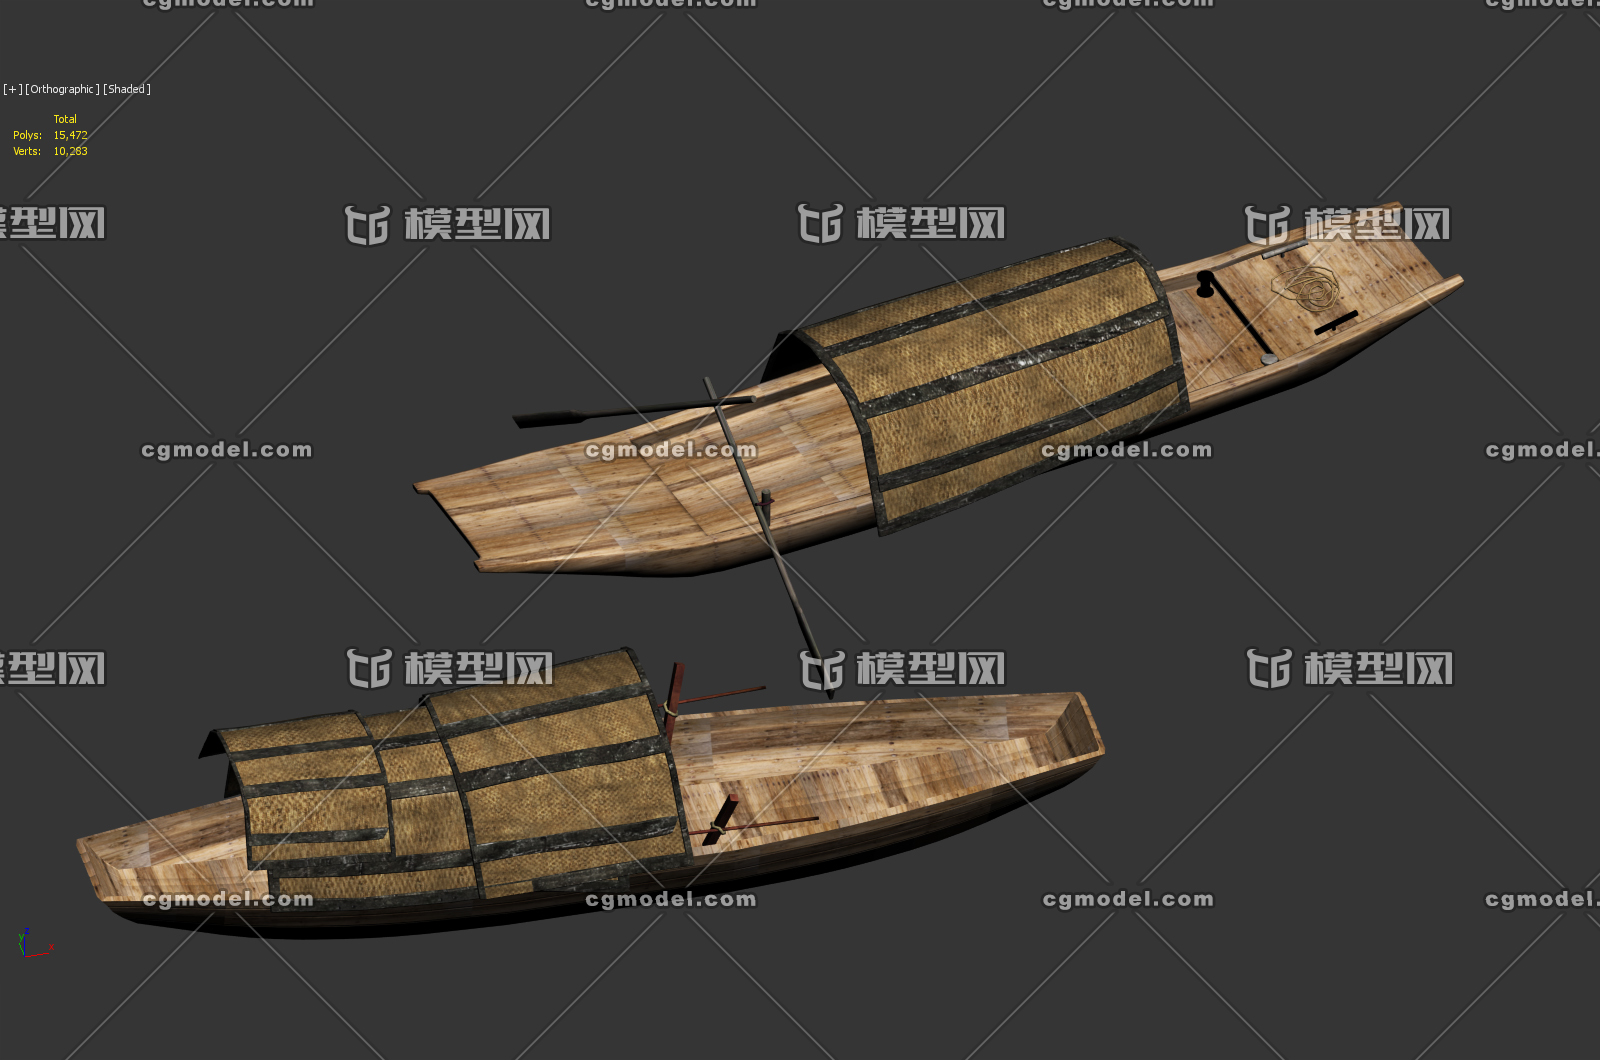 古代船 划桨 简模官方提示:1,如该资源发布者无特别说明,模型结构